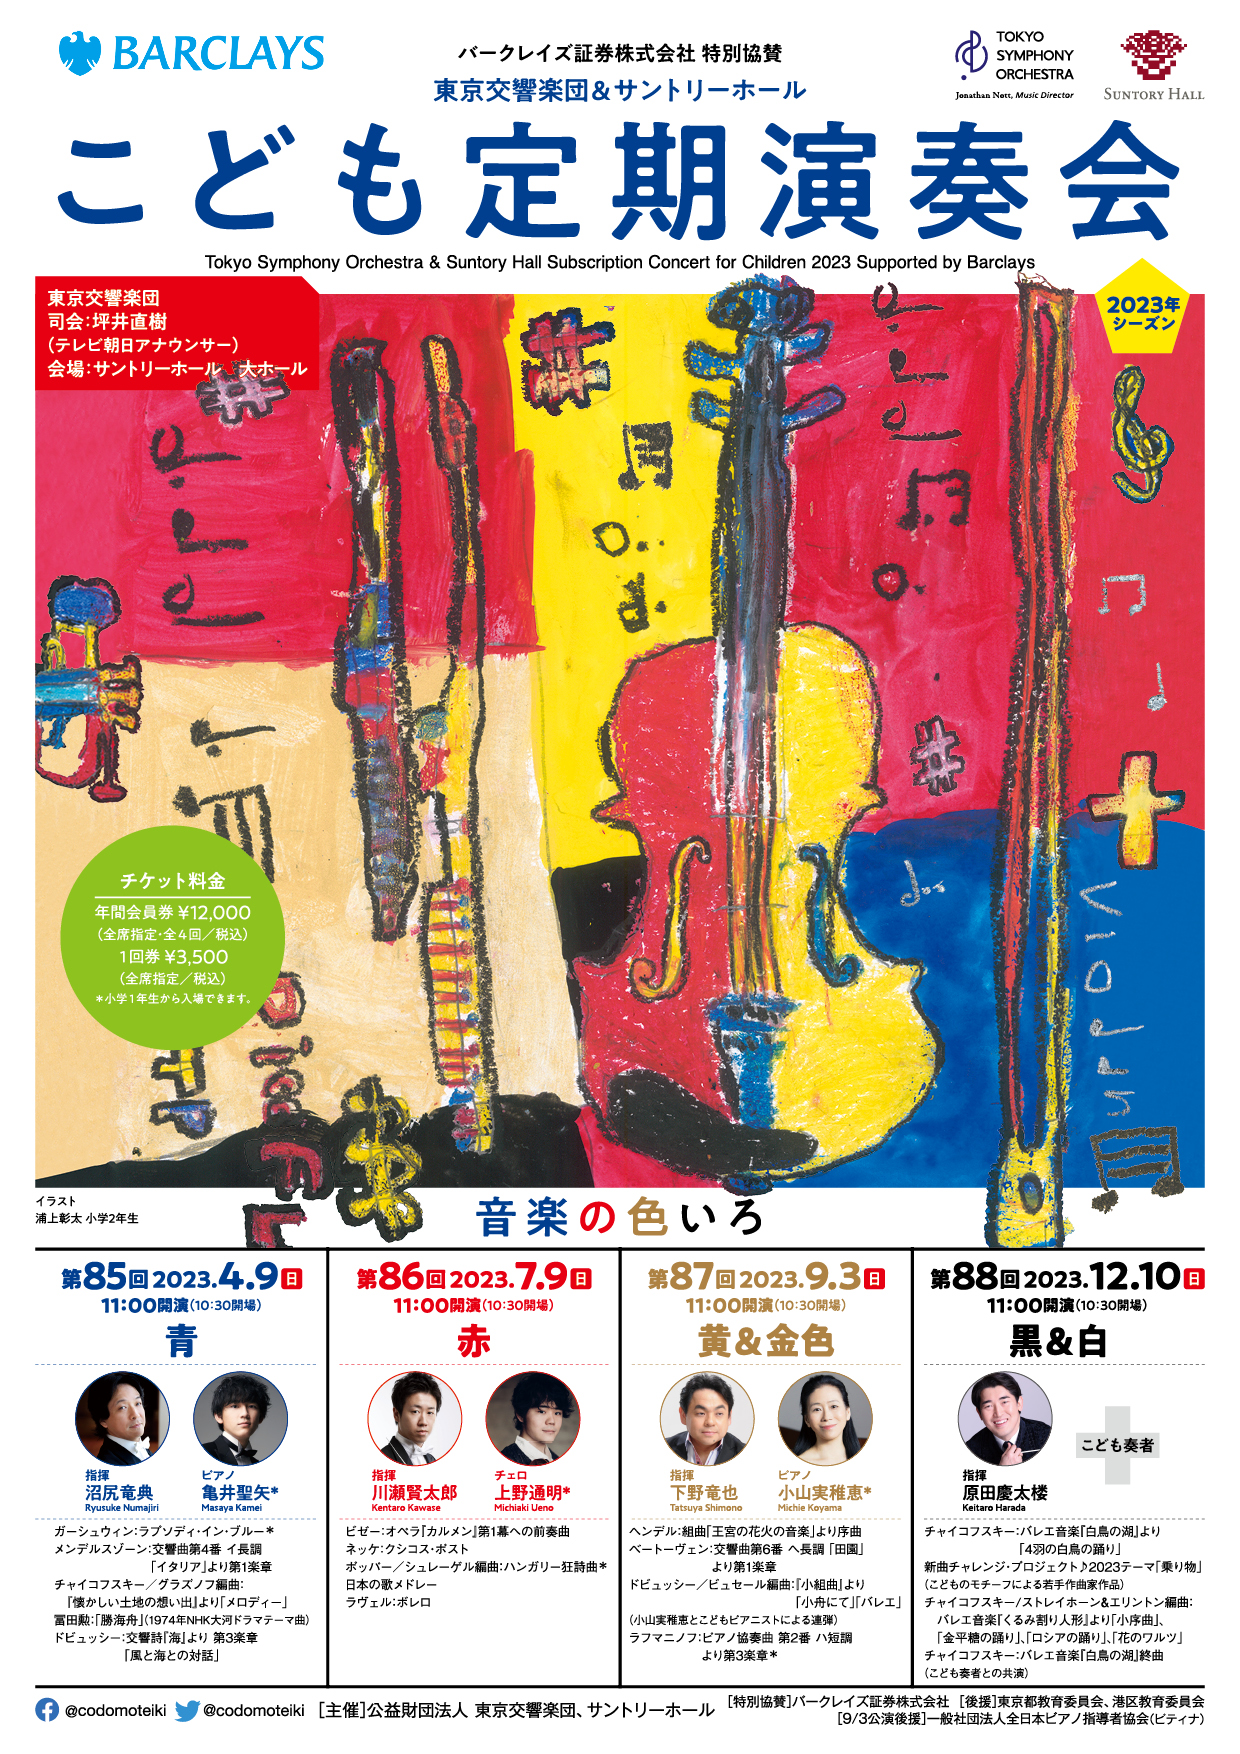 東京シティフィルハーモニック管弦楽団 第75回ティアラこうとう定期演奏会